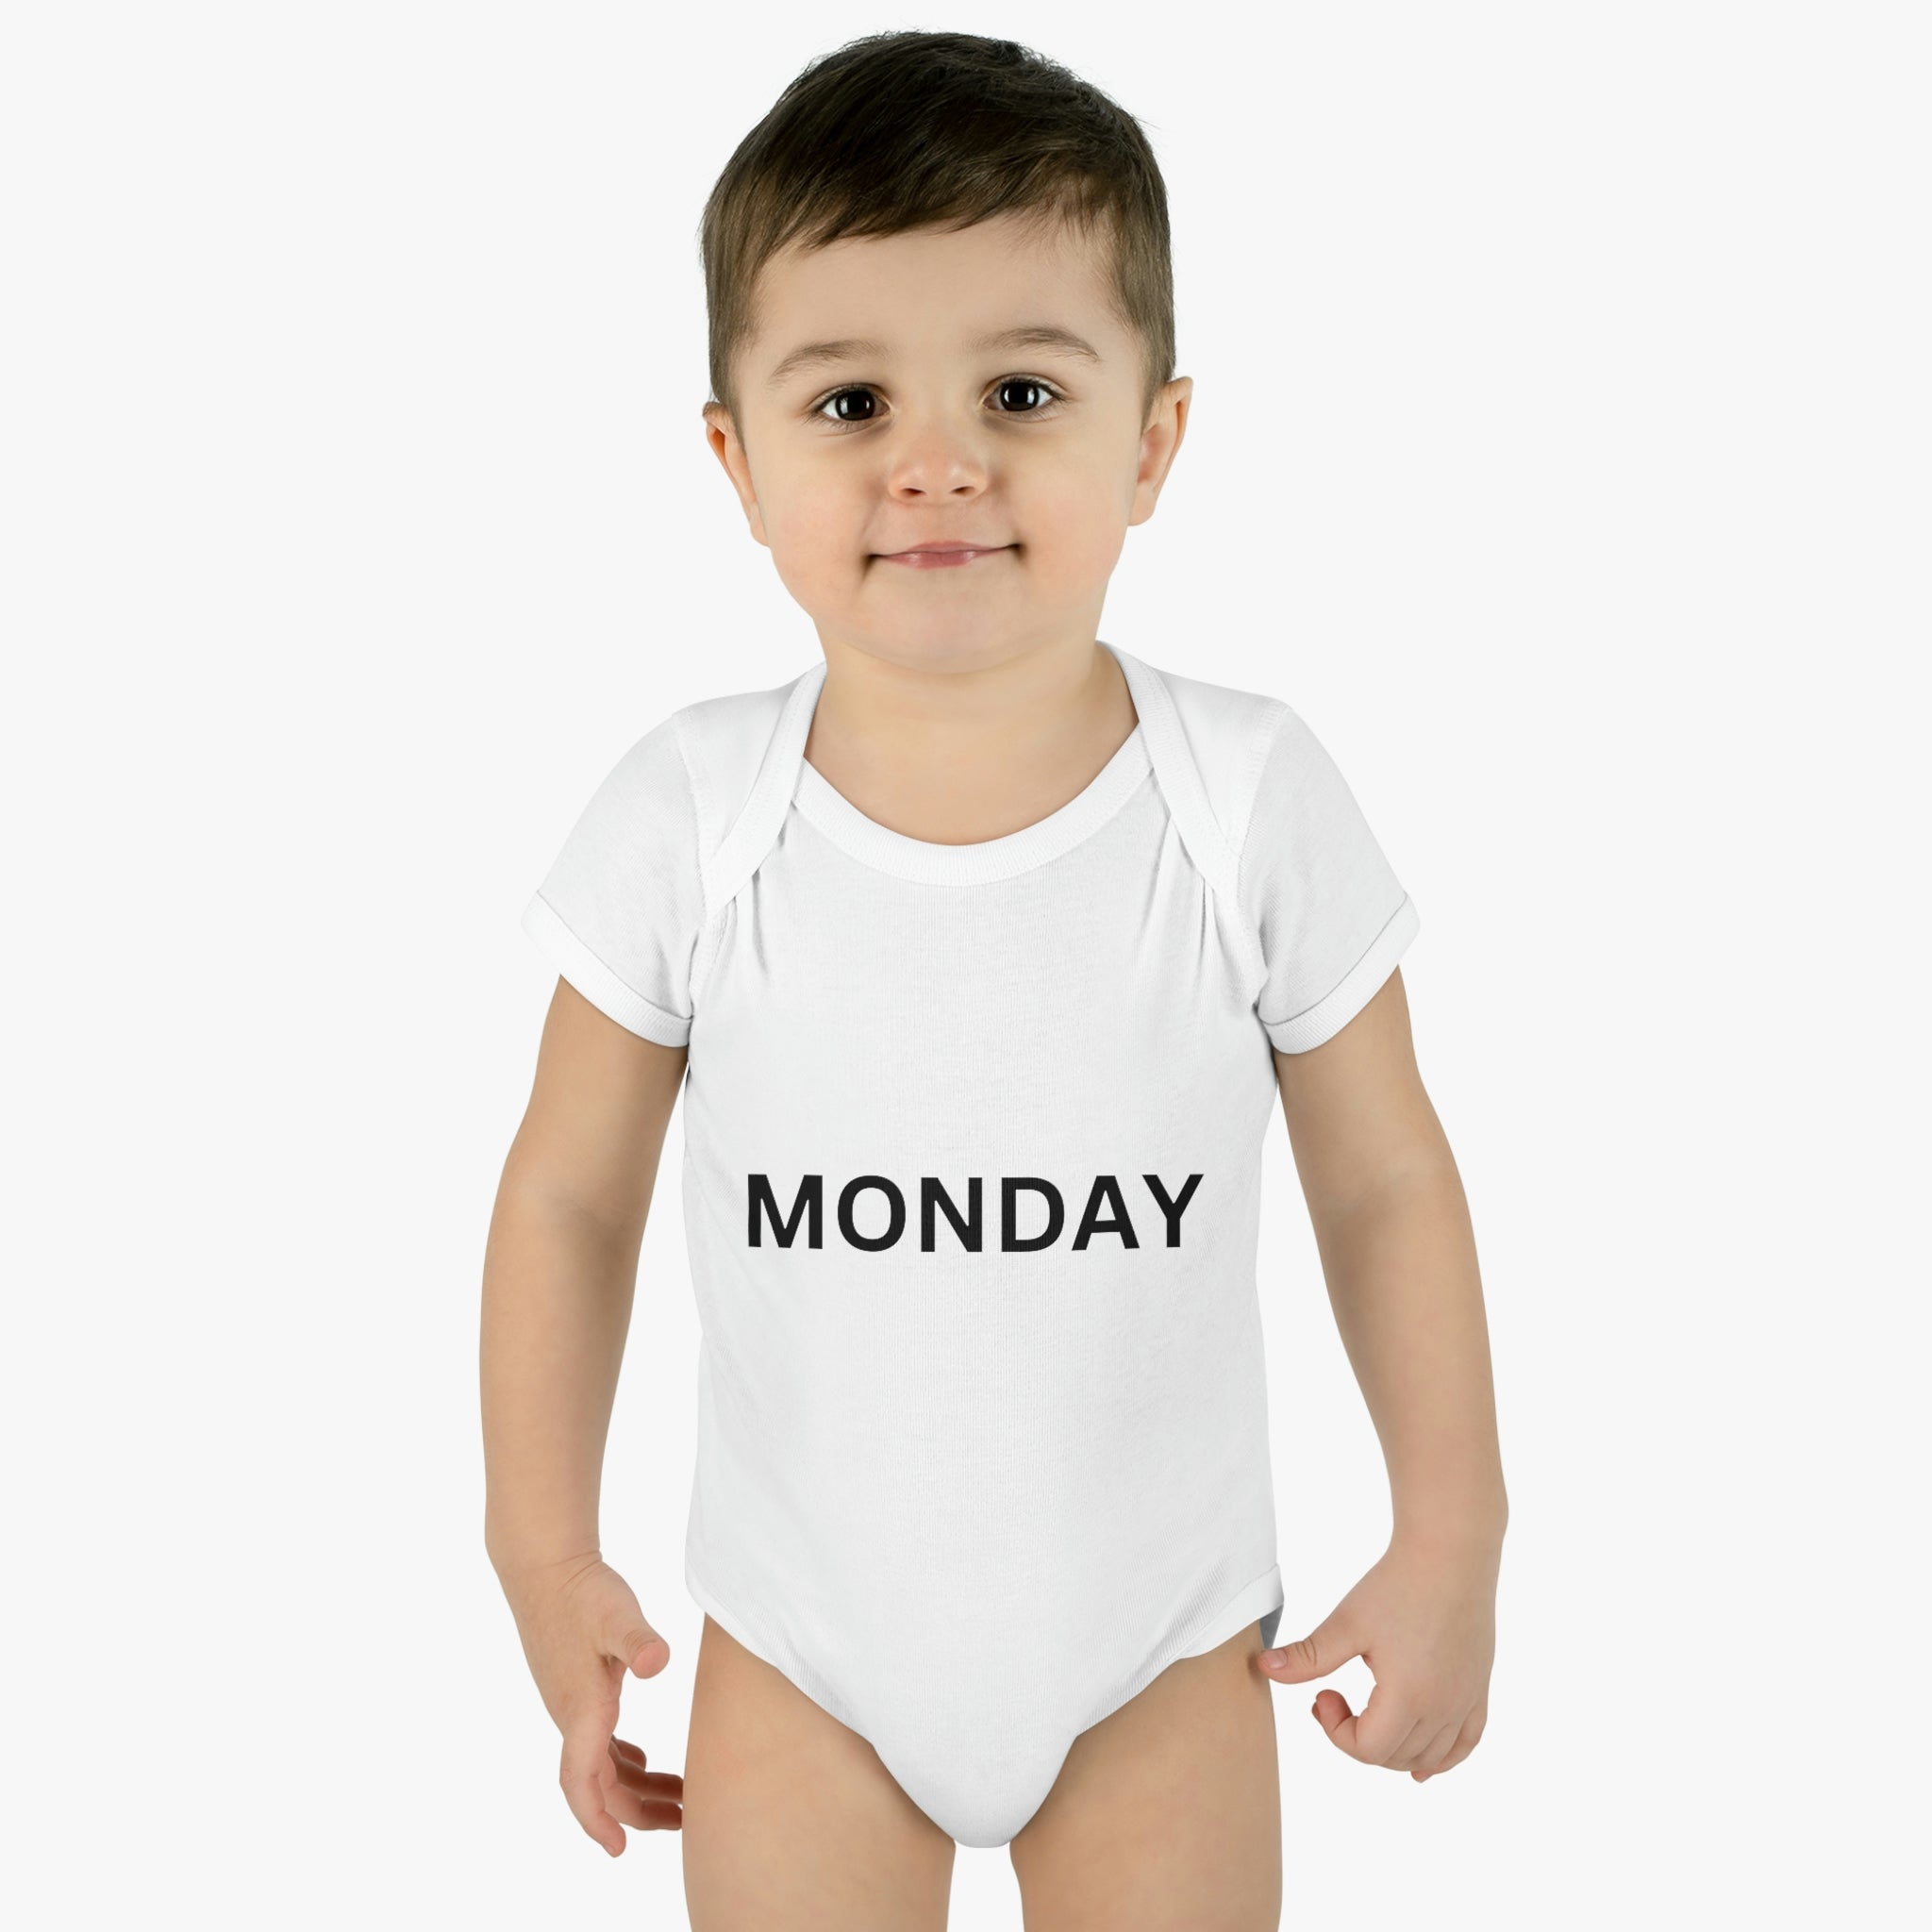 Monday Baby Bodysuit